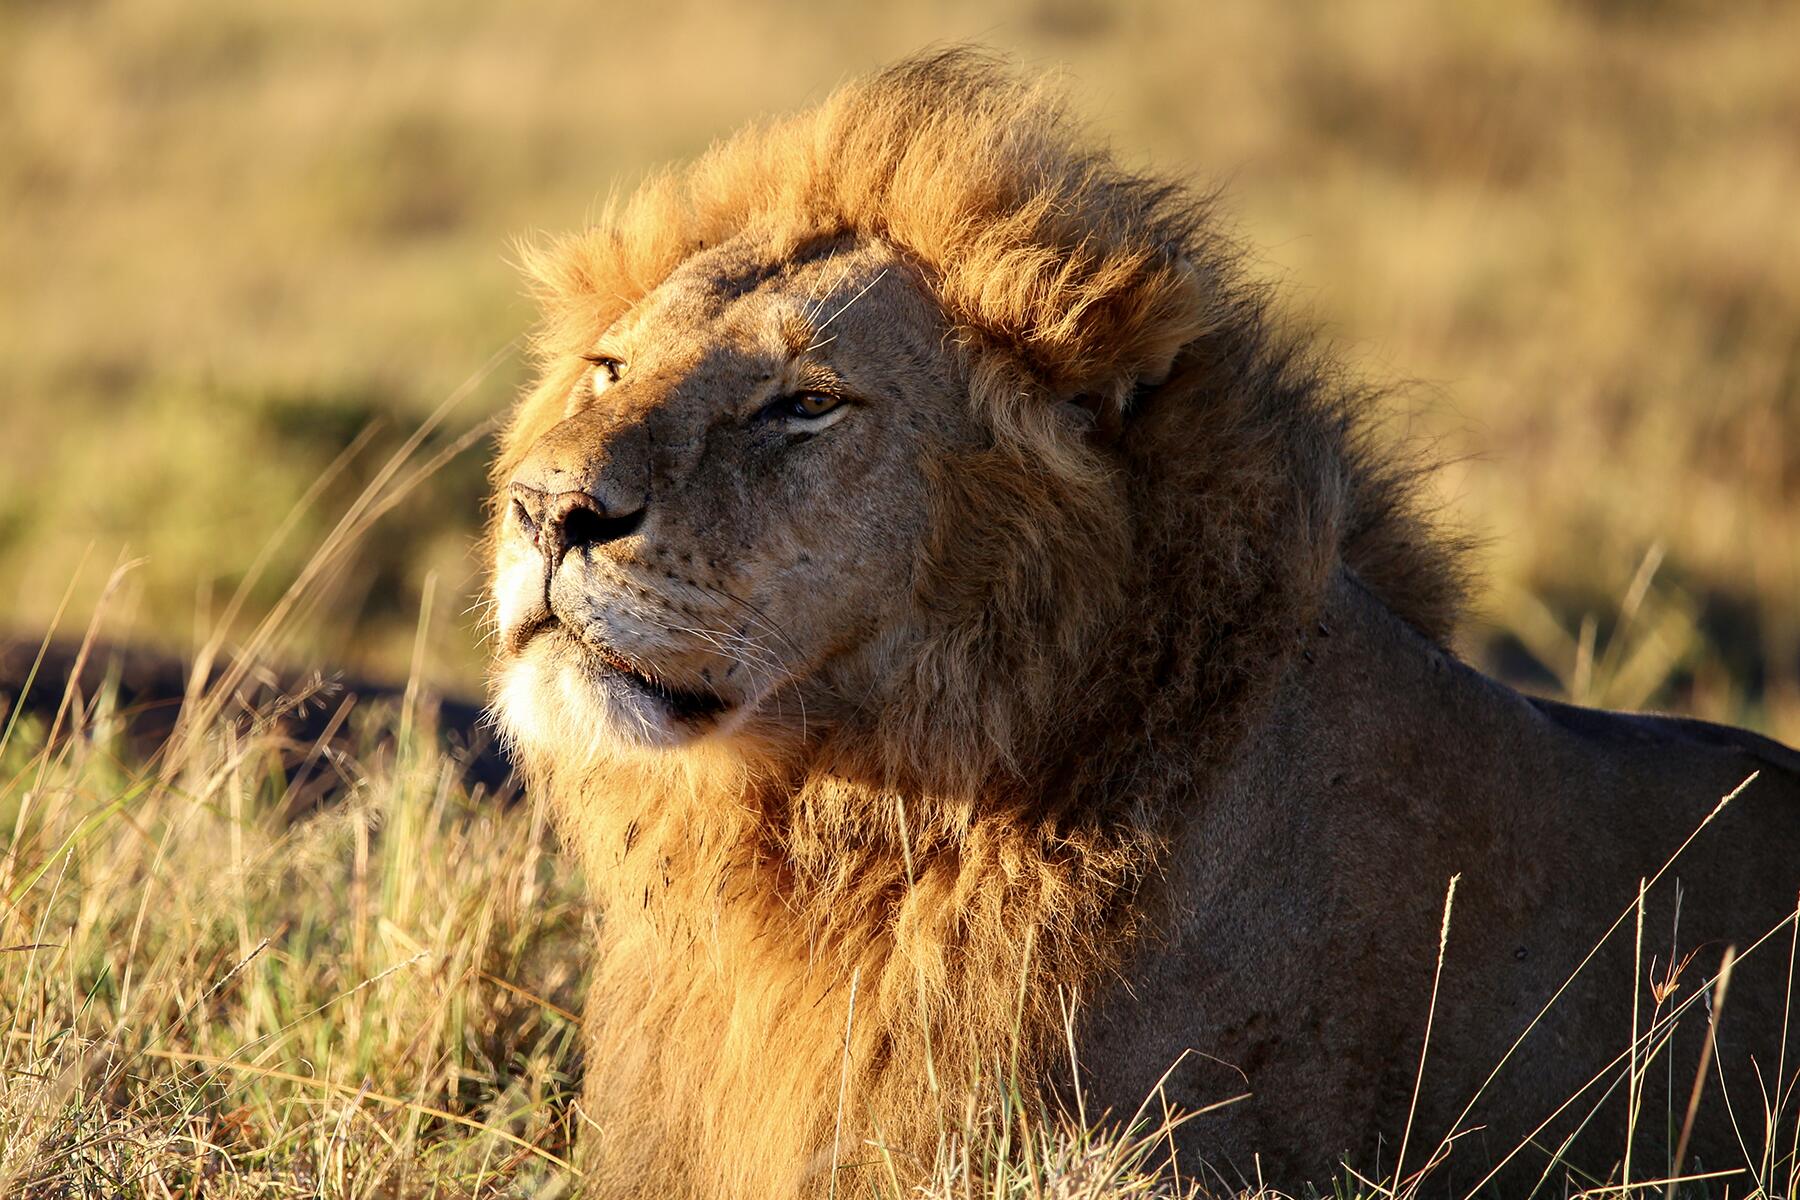 Olvídese del parque franquista, he aquí por qué su safari en Kenia debería estar en Mara Naboisho Conservancy